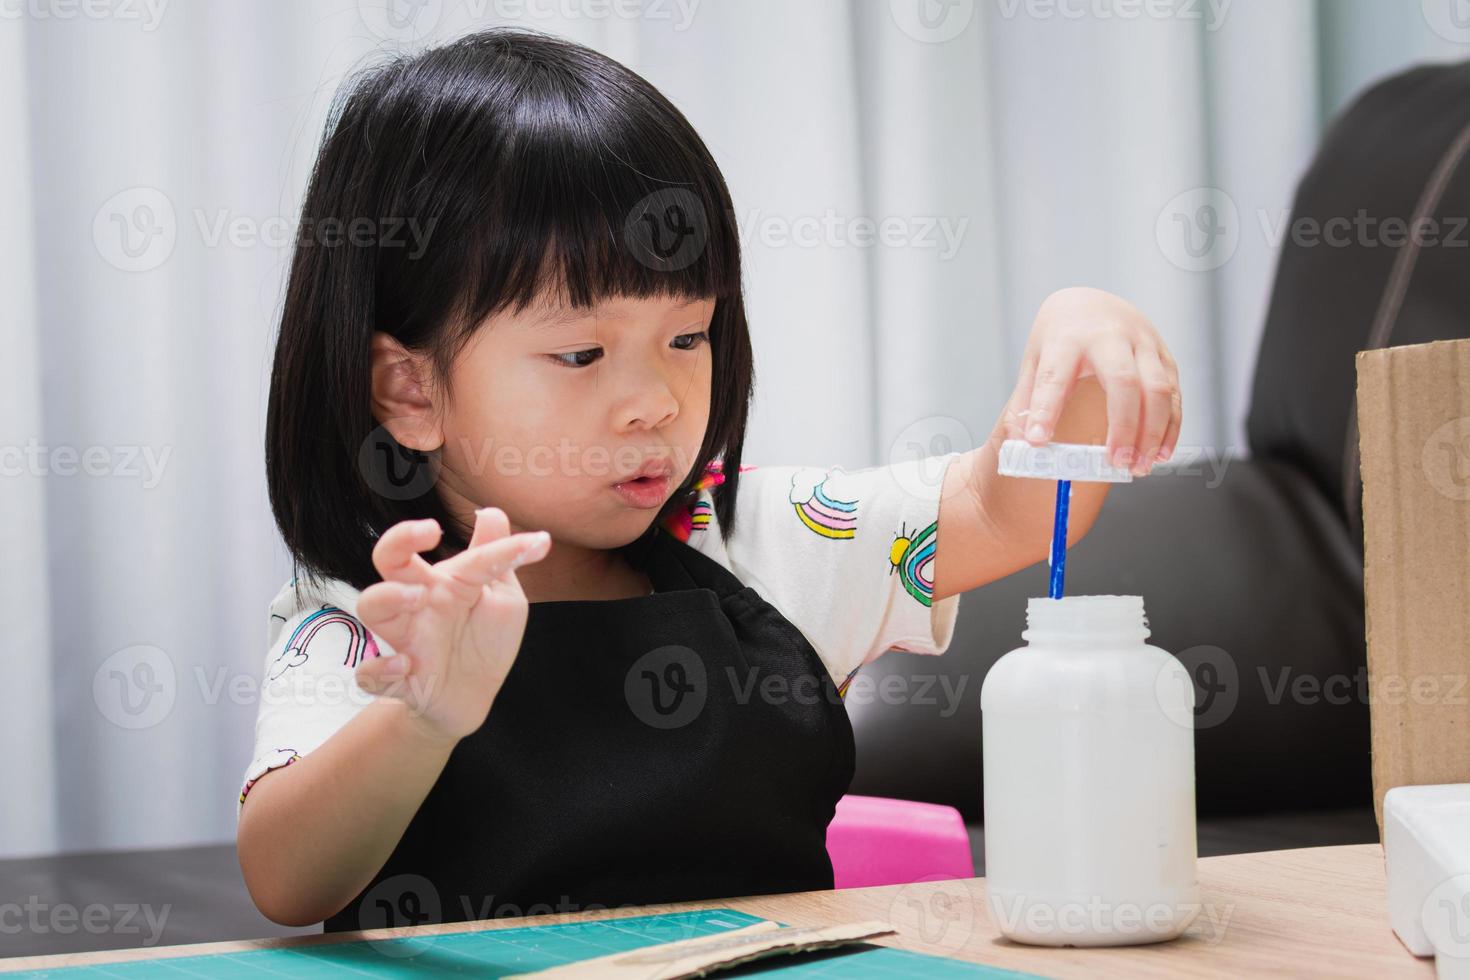 Una niña de kindergarten haciendo manualidades muestra expresiones emocionadas cuando abre las tapas de las botellas de pegamento, el niño se envuelve la boca y se divierte haciendo sus propias creaciones. niños de 4 a 5 años. foto